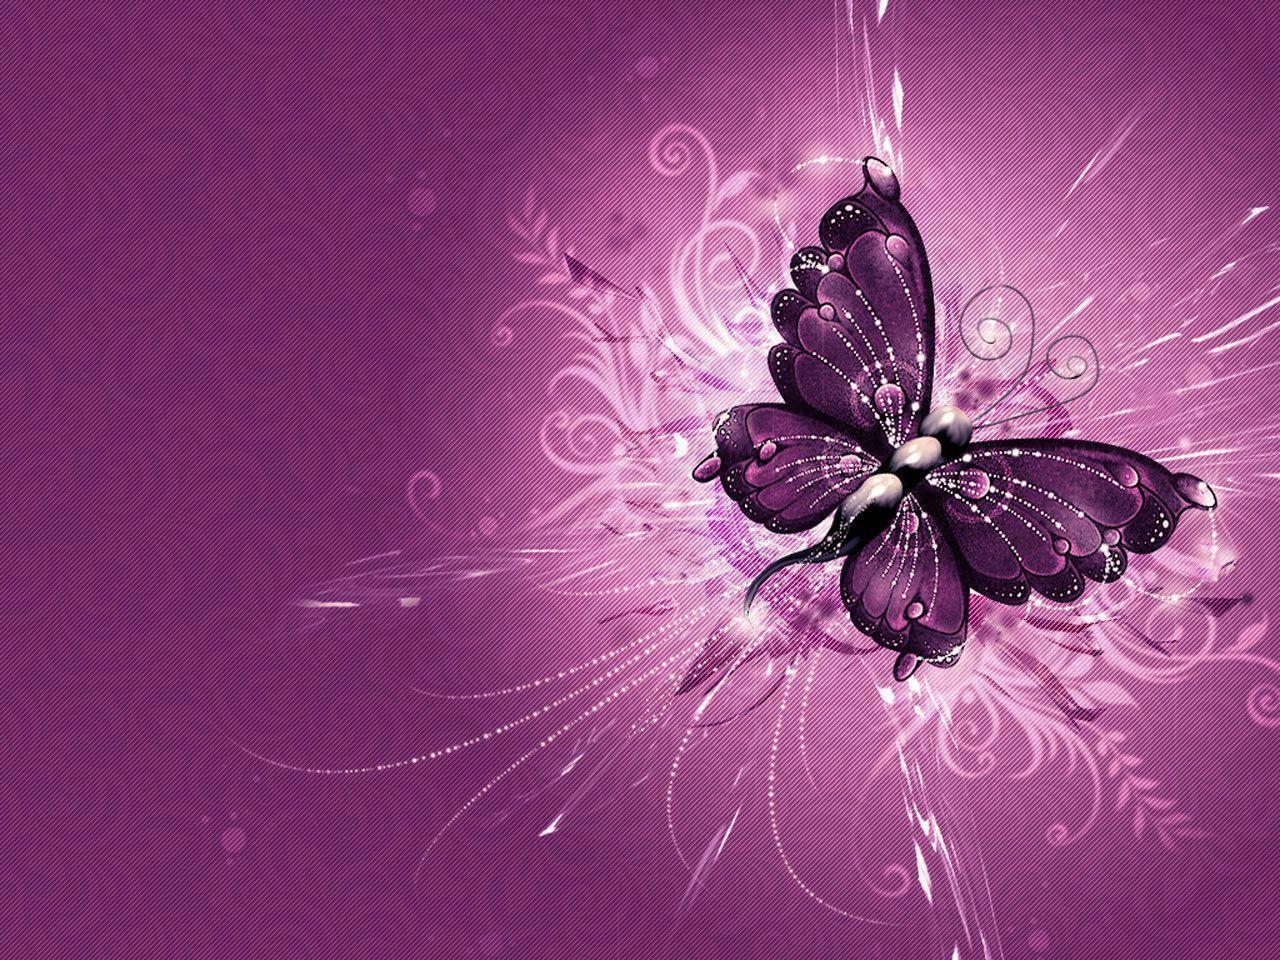 Wallpaper Purple. High Quality Wallpaper, Wallpaper Desktop, High